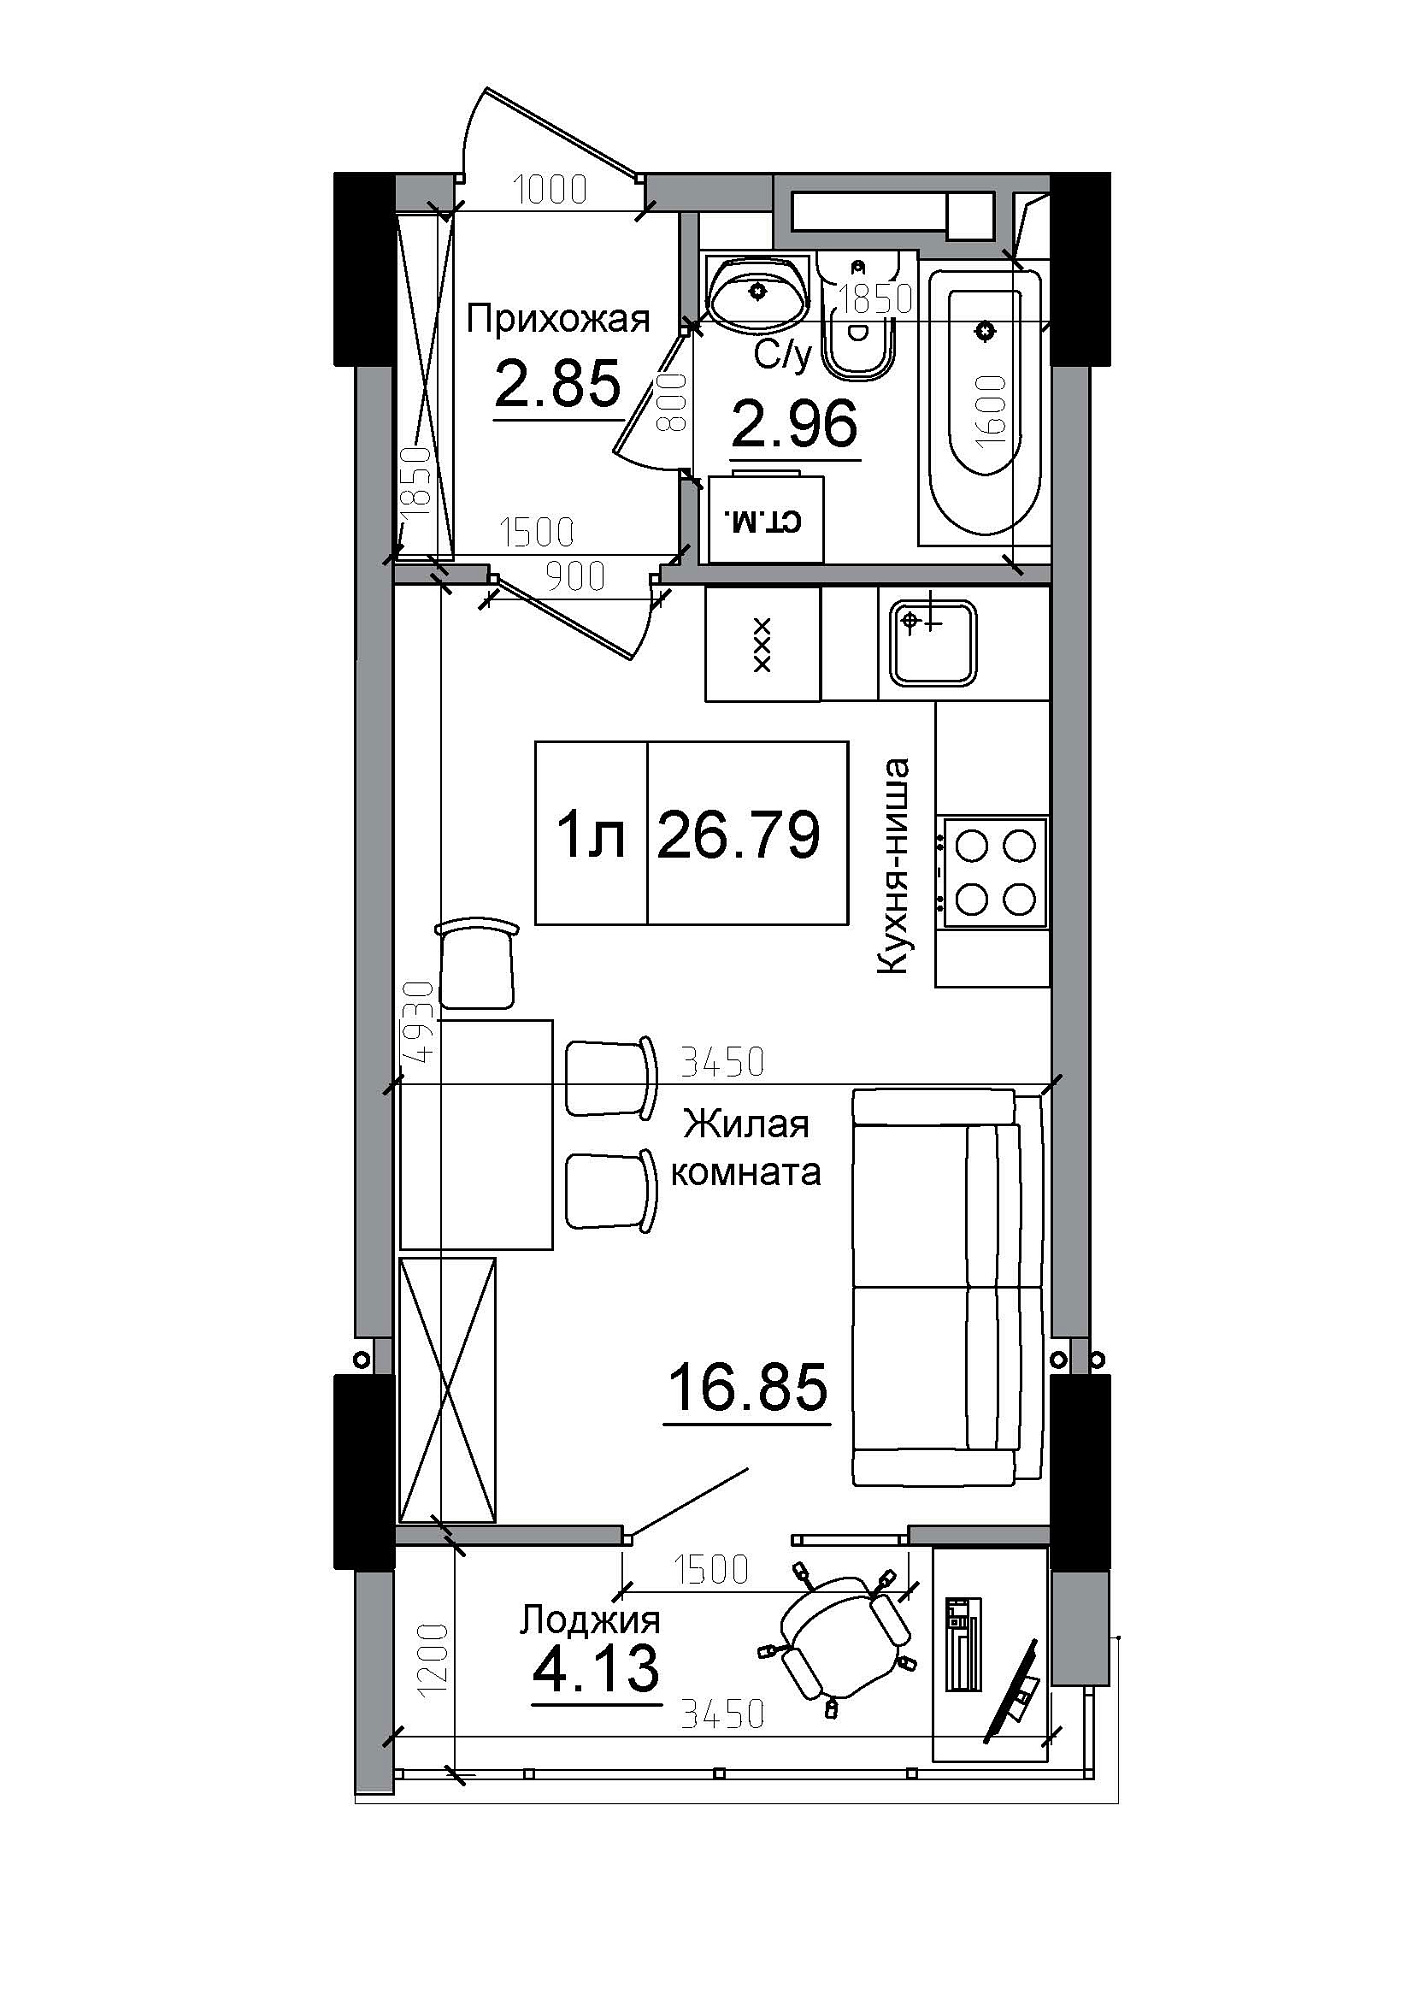 Планування Smart-квартира площею 26.79м2, AB-12-11/00014.